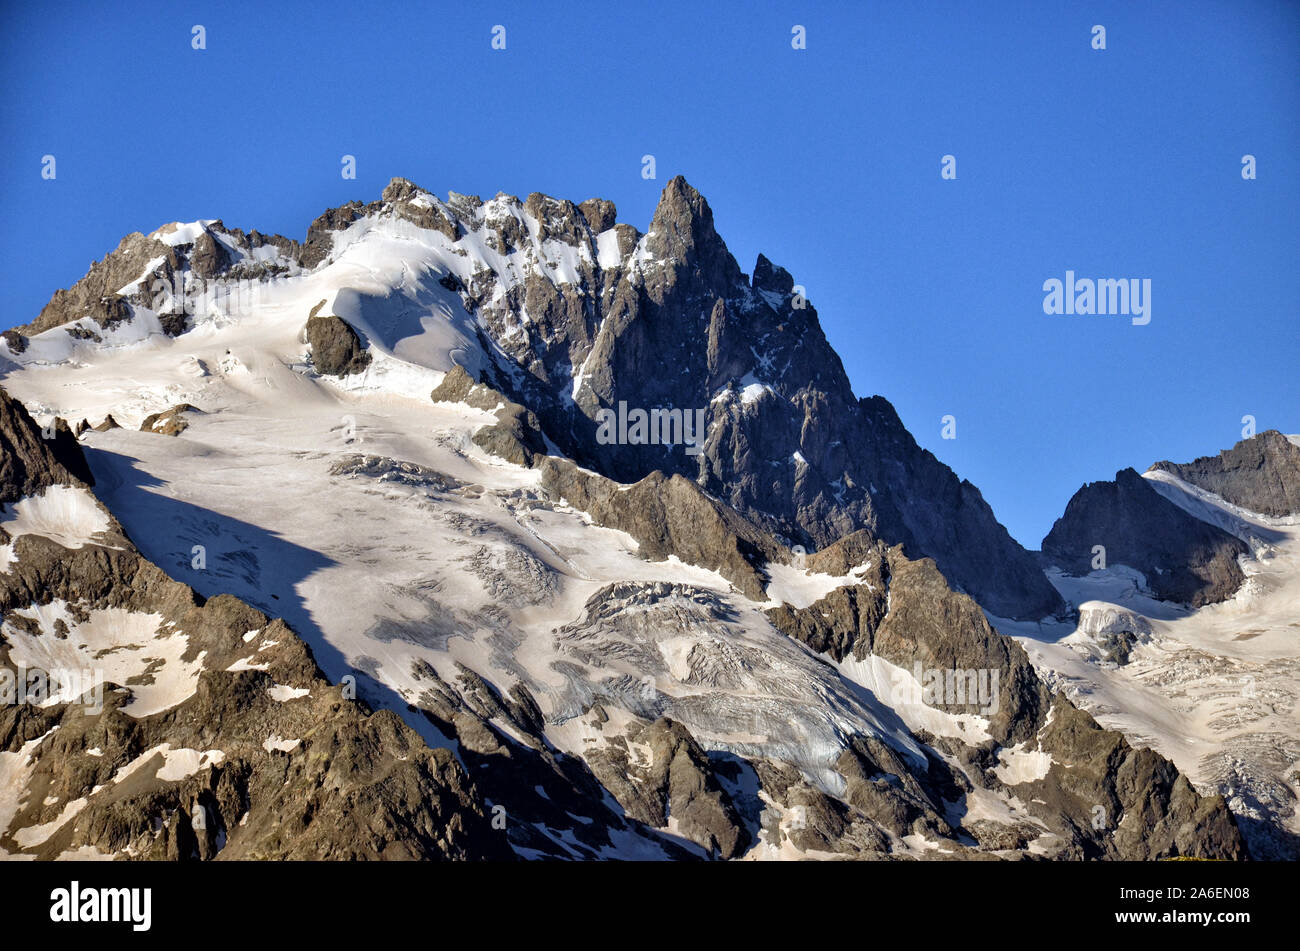 Gipfel von La Meije im Nationalpark von Les Ecrins in den französischen Alpen. Sicht vom See von goleon. Stockfoto